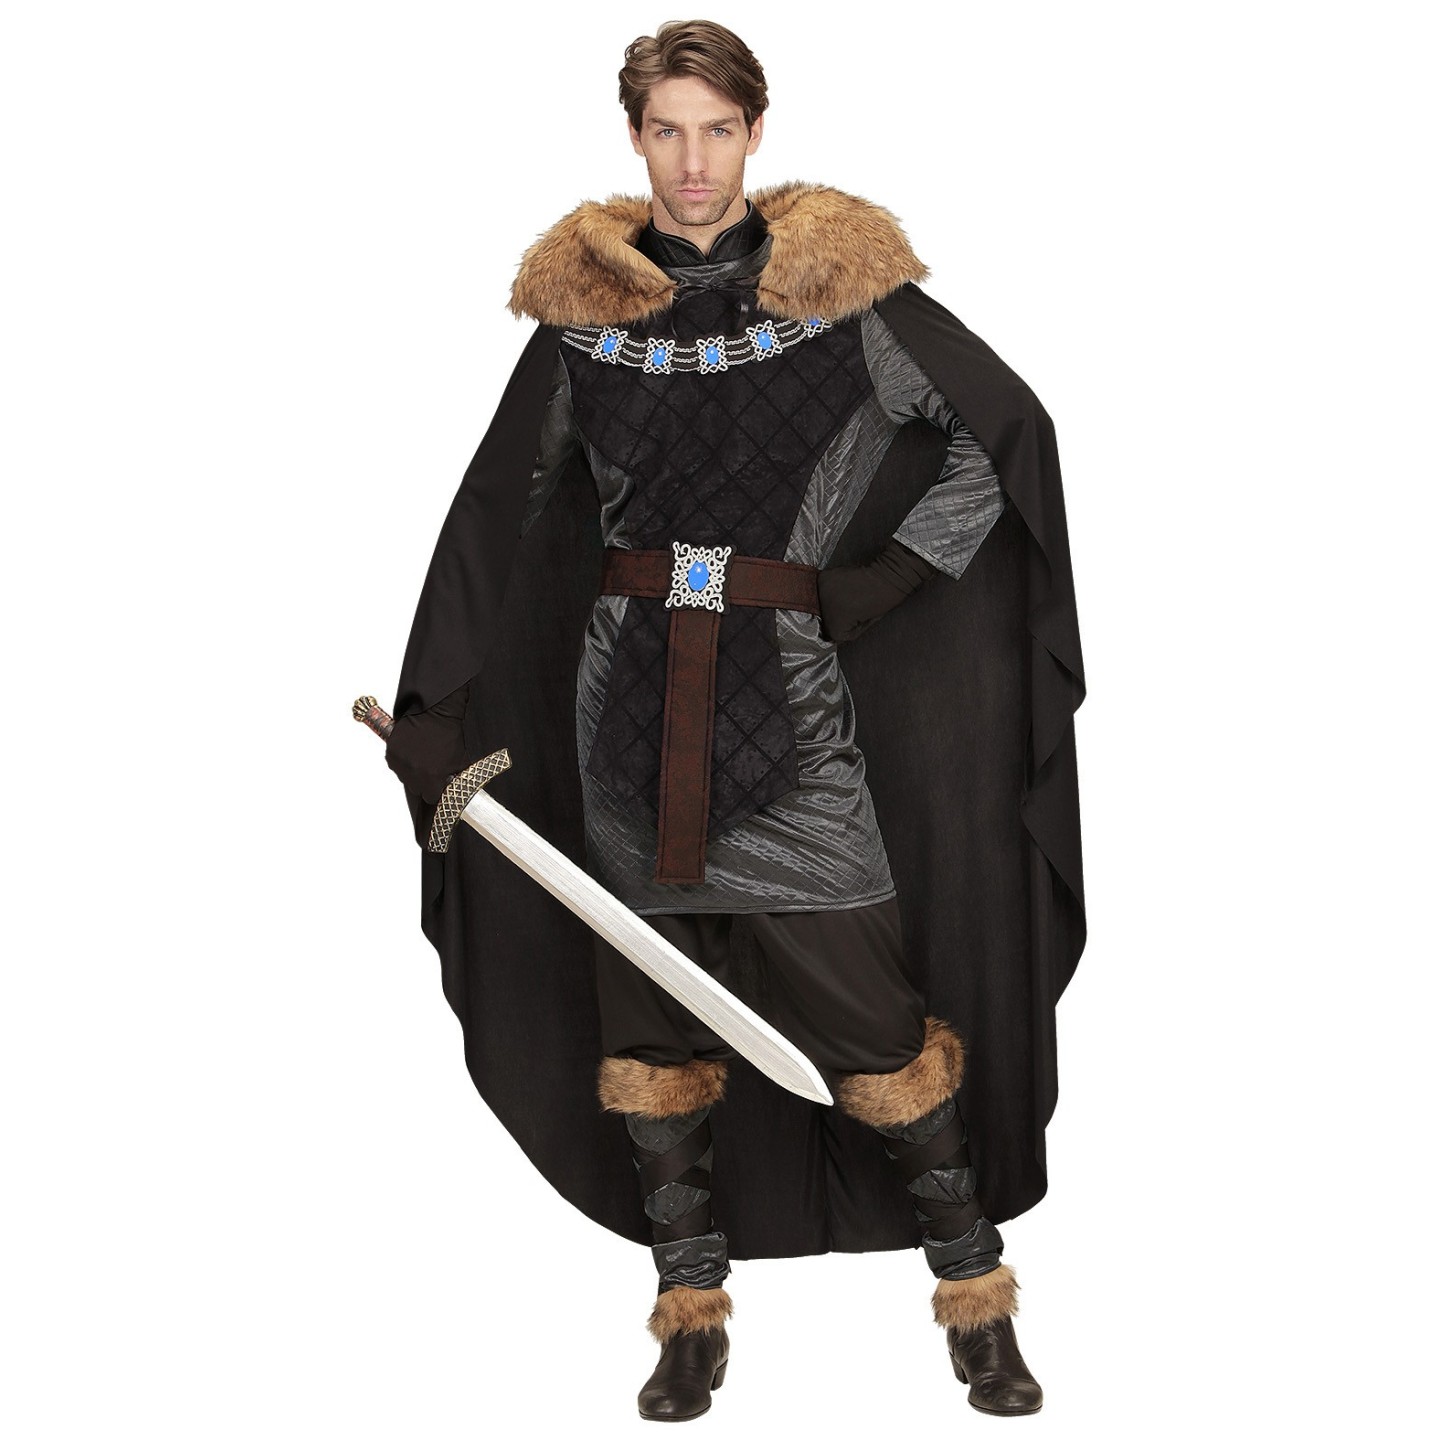 De waarheid vertellen Validatie Welsprekend Middeleeuwse prins kostuum | Jokershop.be - Verkleedkleding